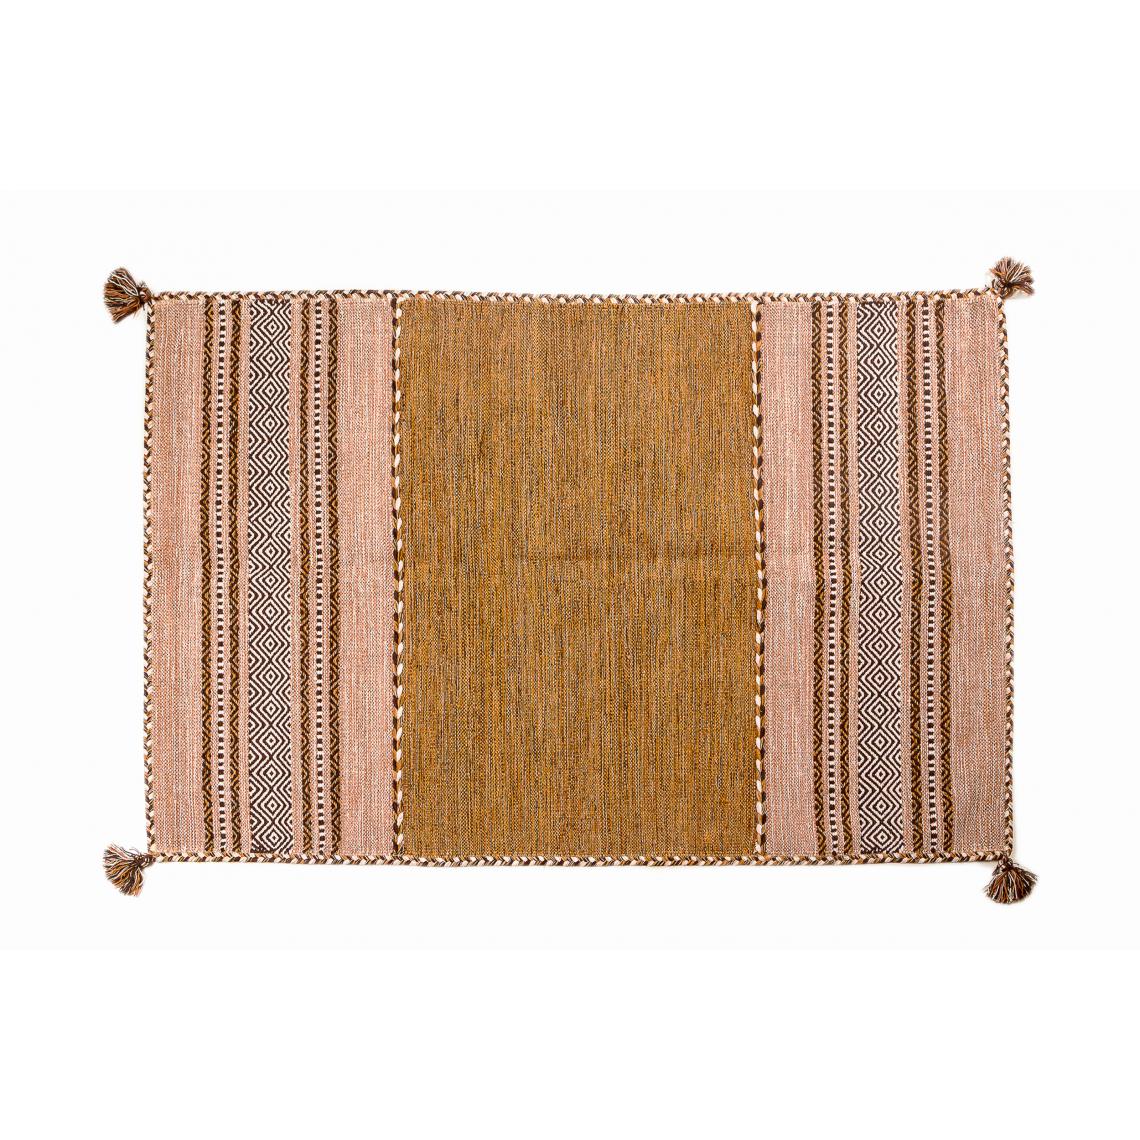 Alter - Tapis moderne Kansas, style kilim, 100% coton, terre, 90x60cm - Tapis